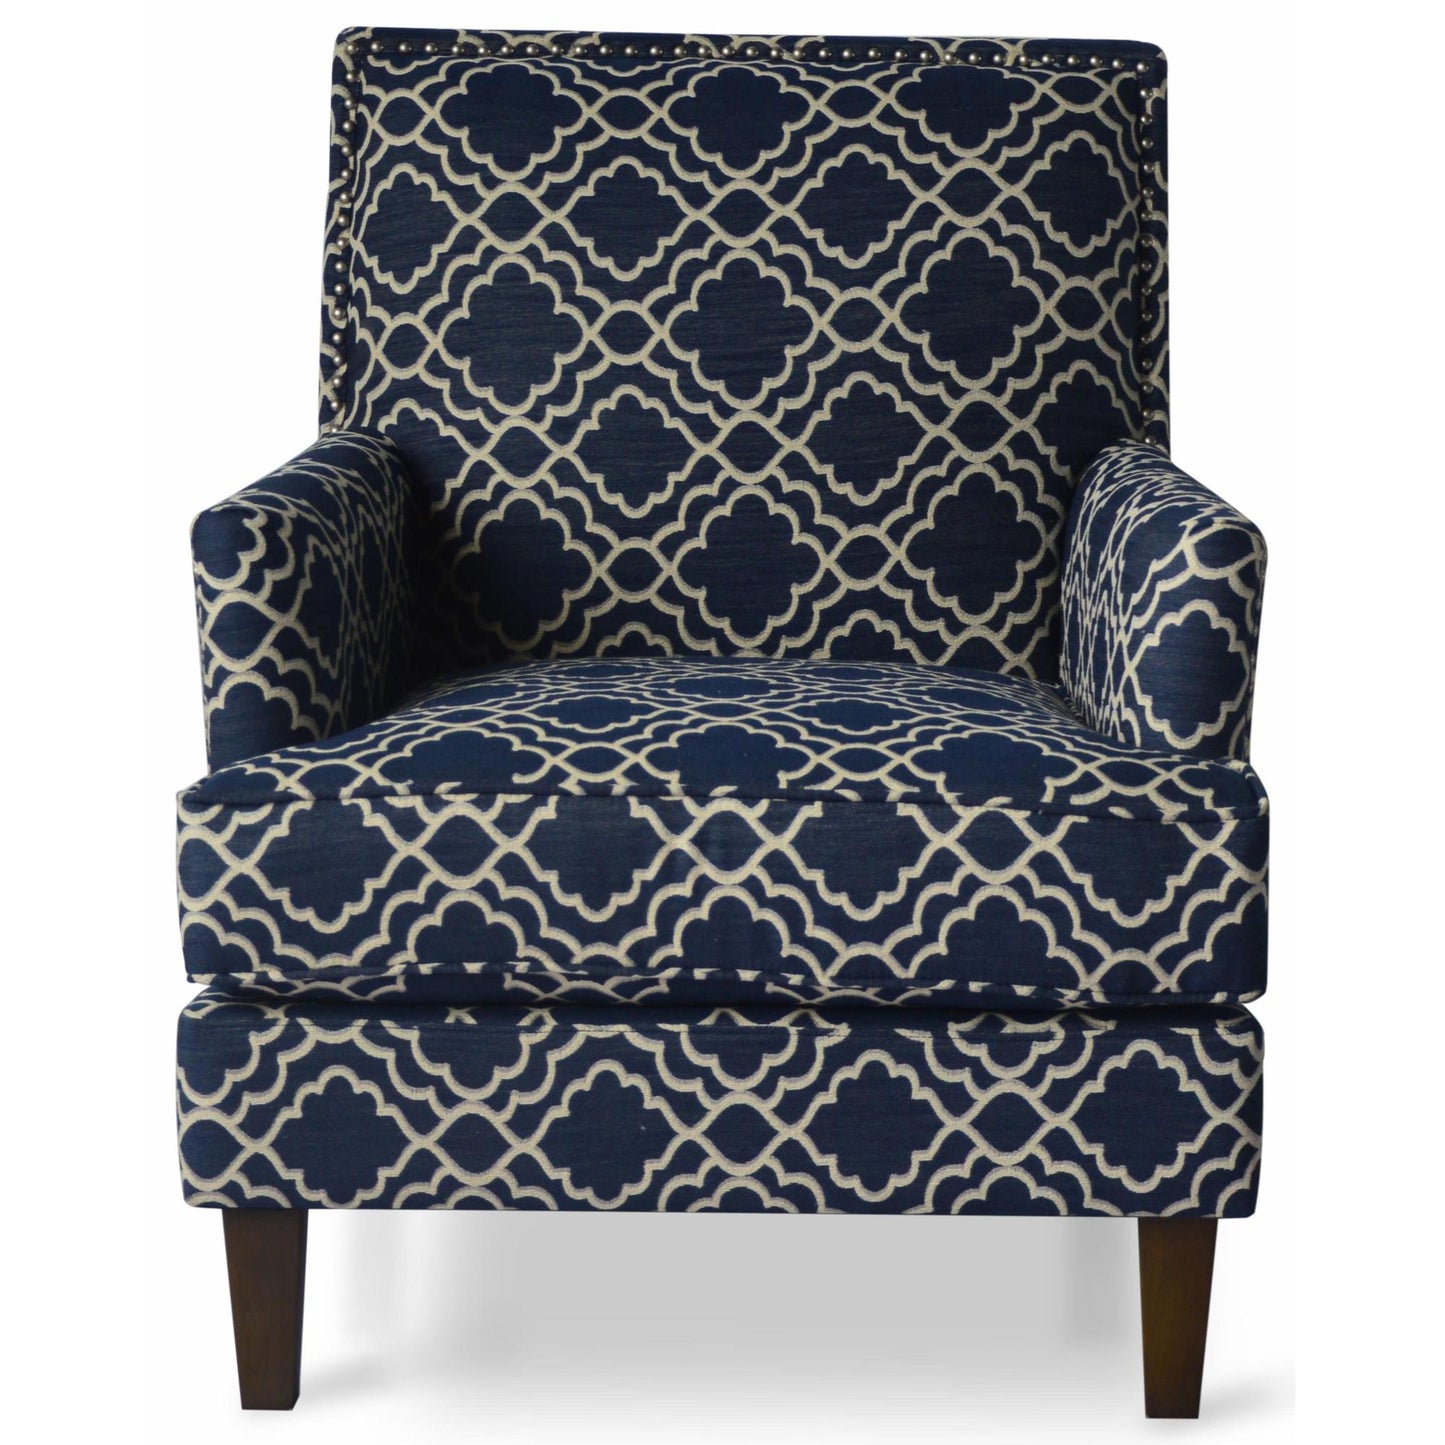 Aubrey Accent Chair in Marine Fabric